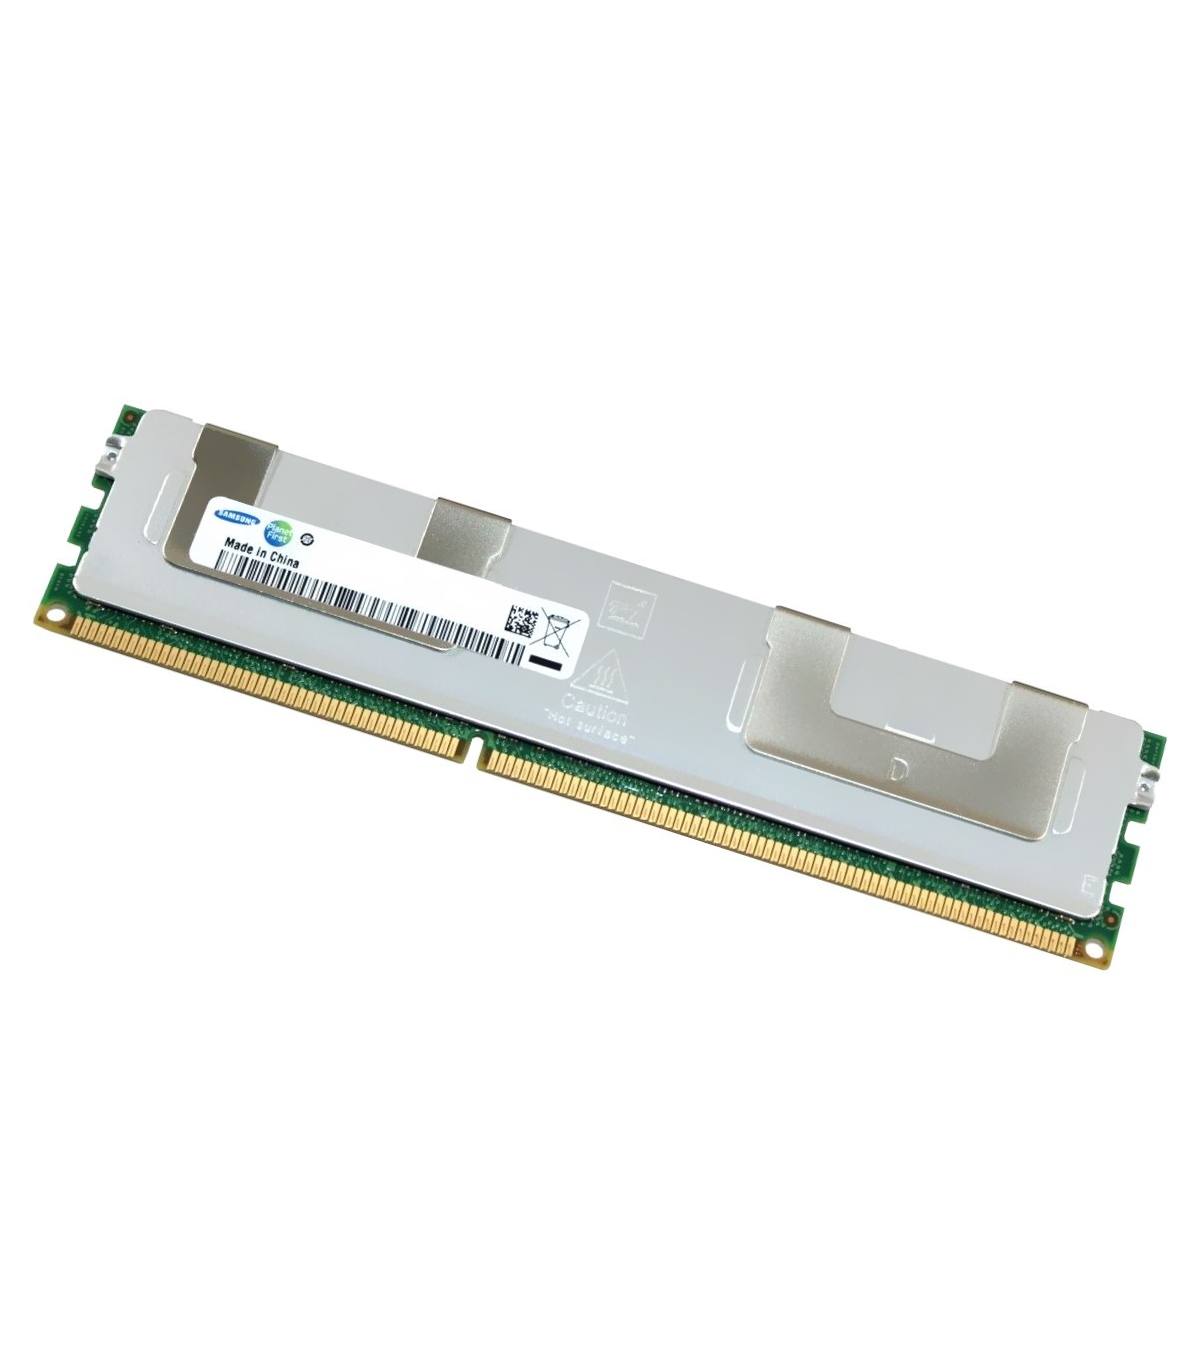 RAM SAMSUNG 4GB 4Rx8 PC3-8500R CN M393B5173FHD-CF8 1028